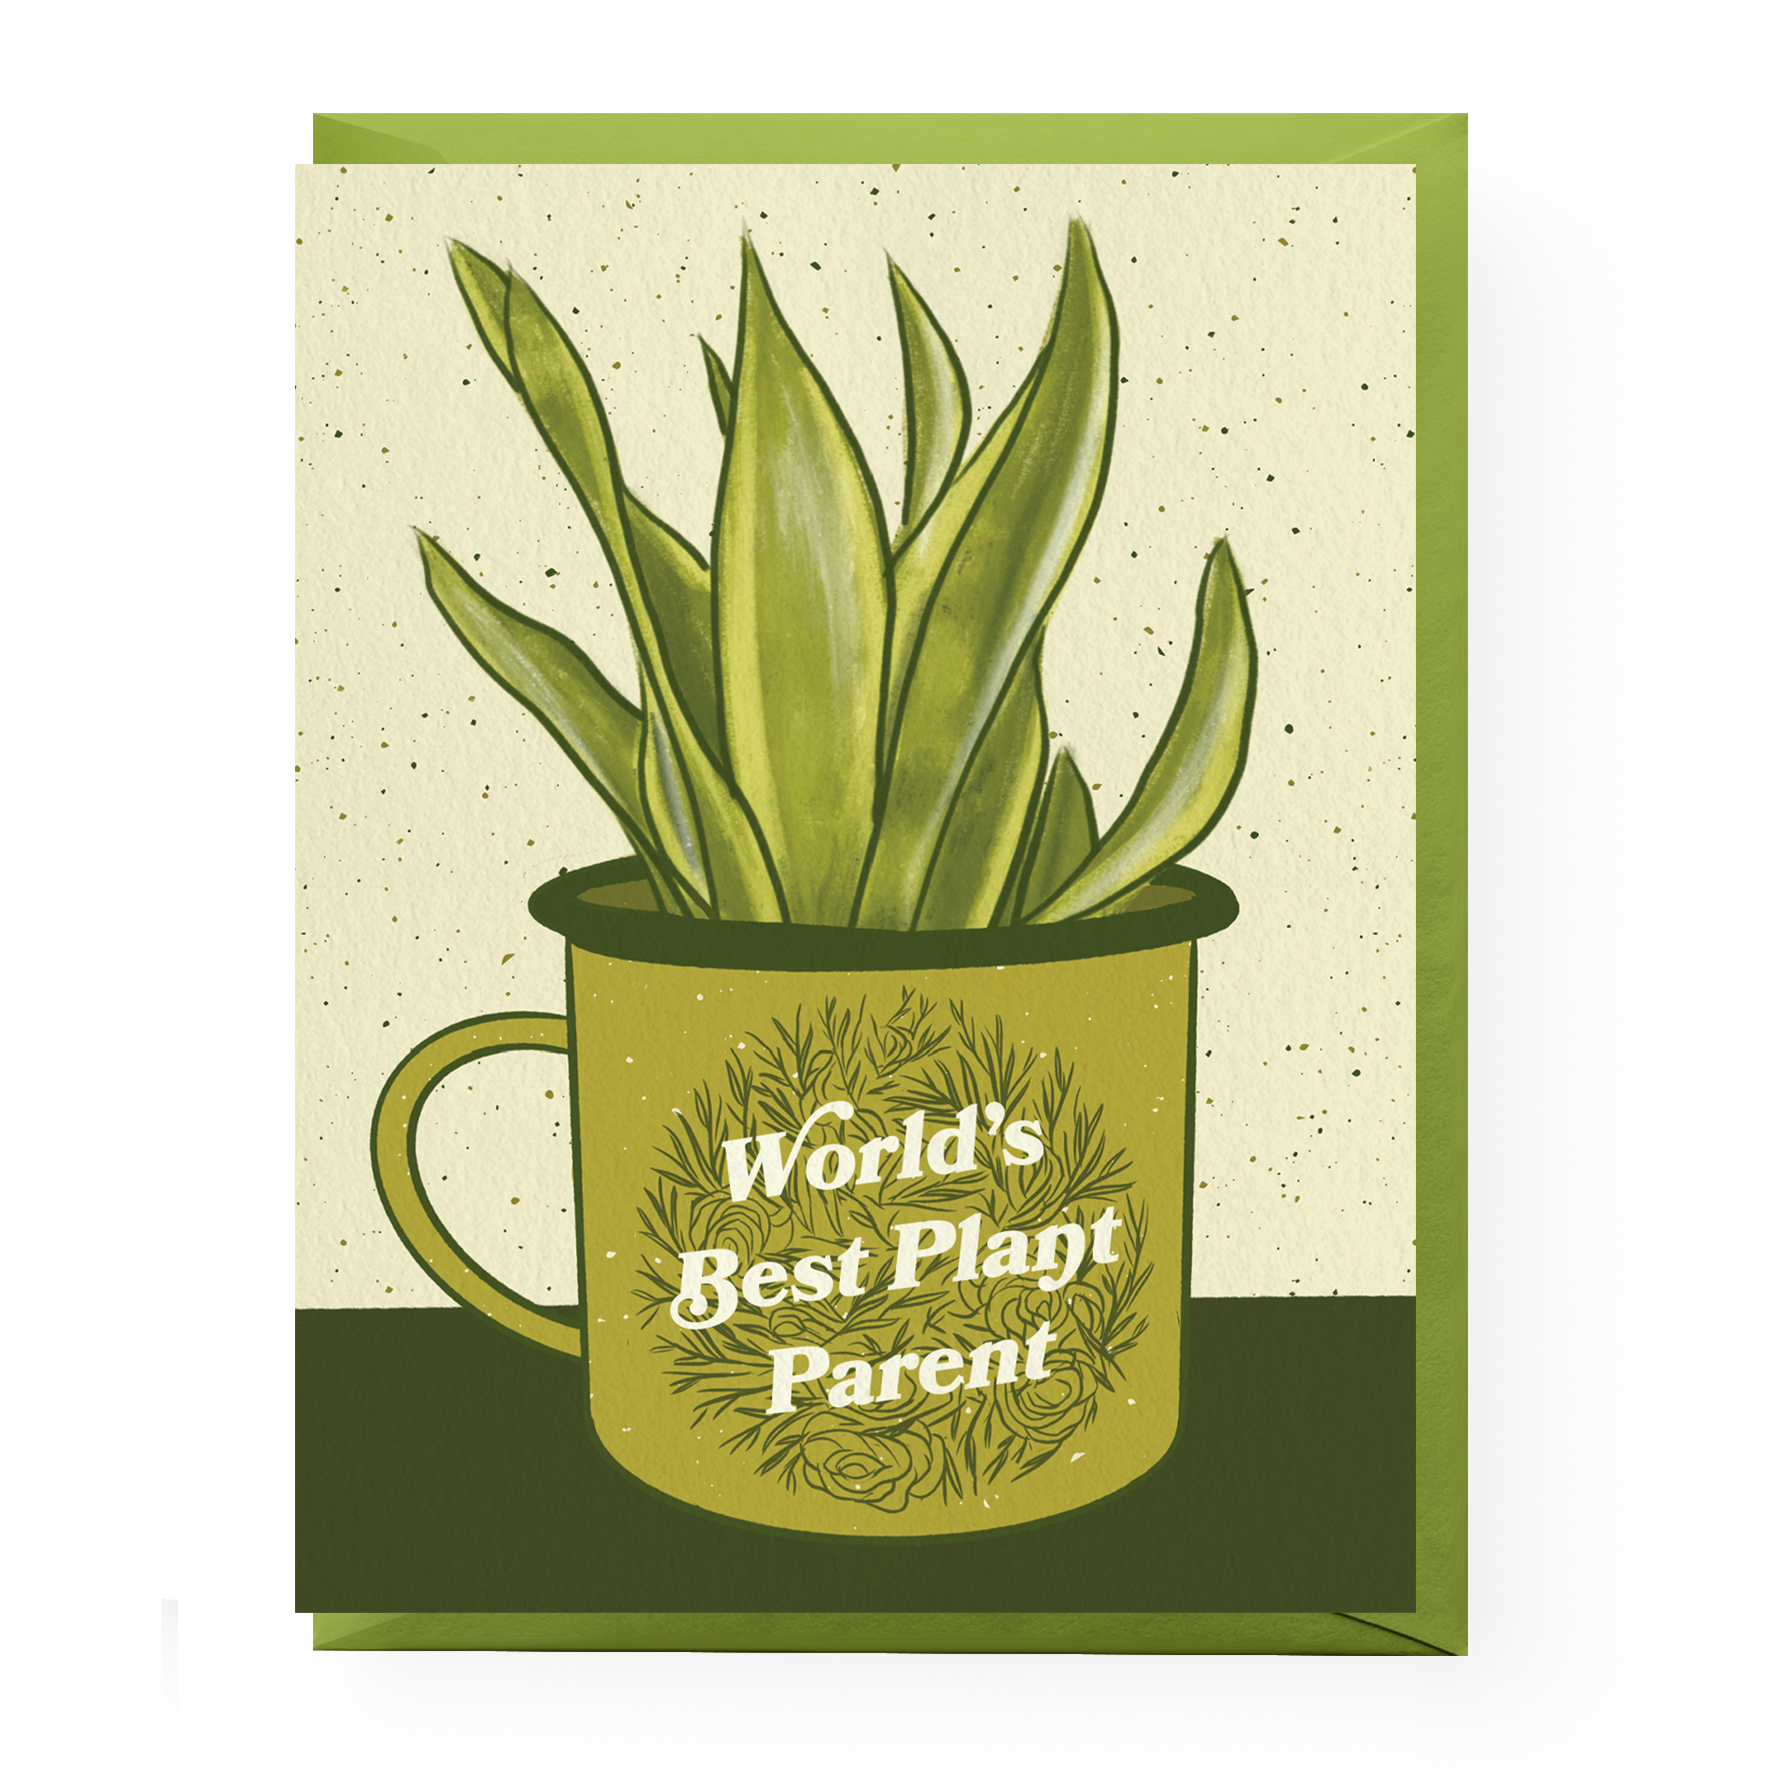 World's Best Plant Parent